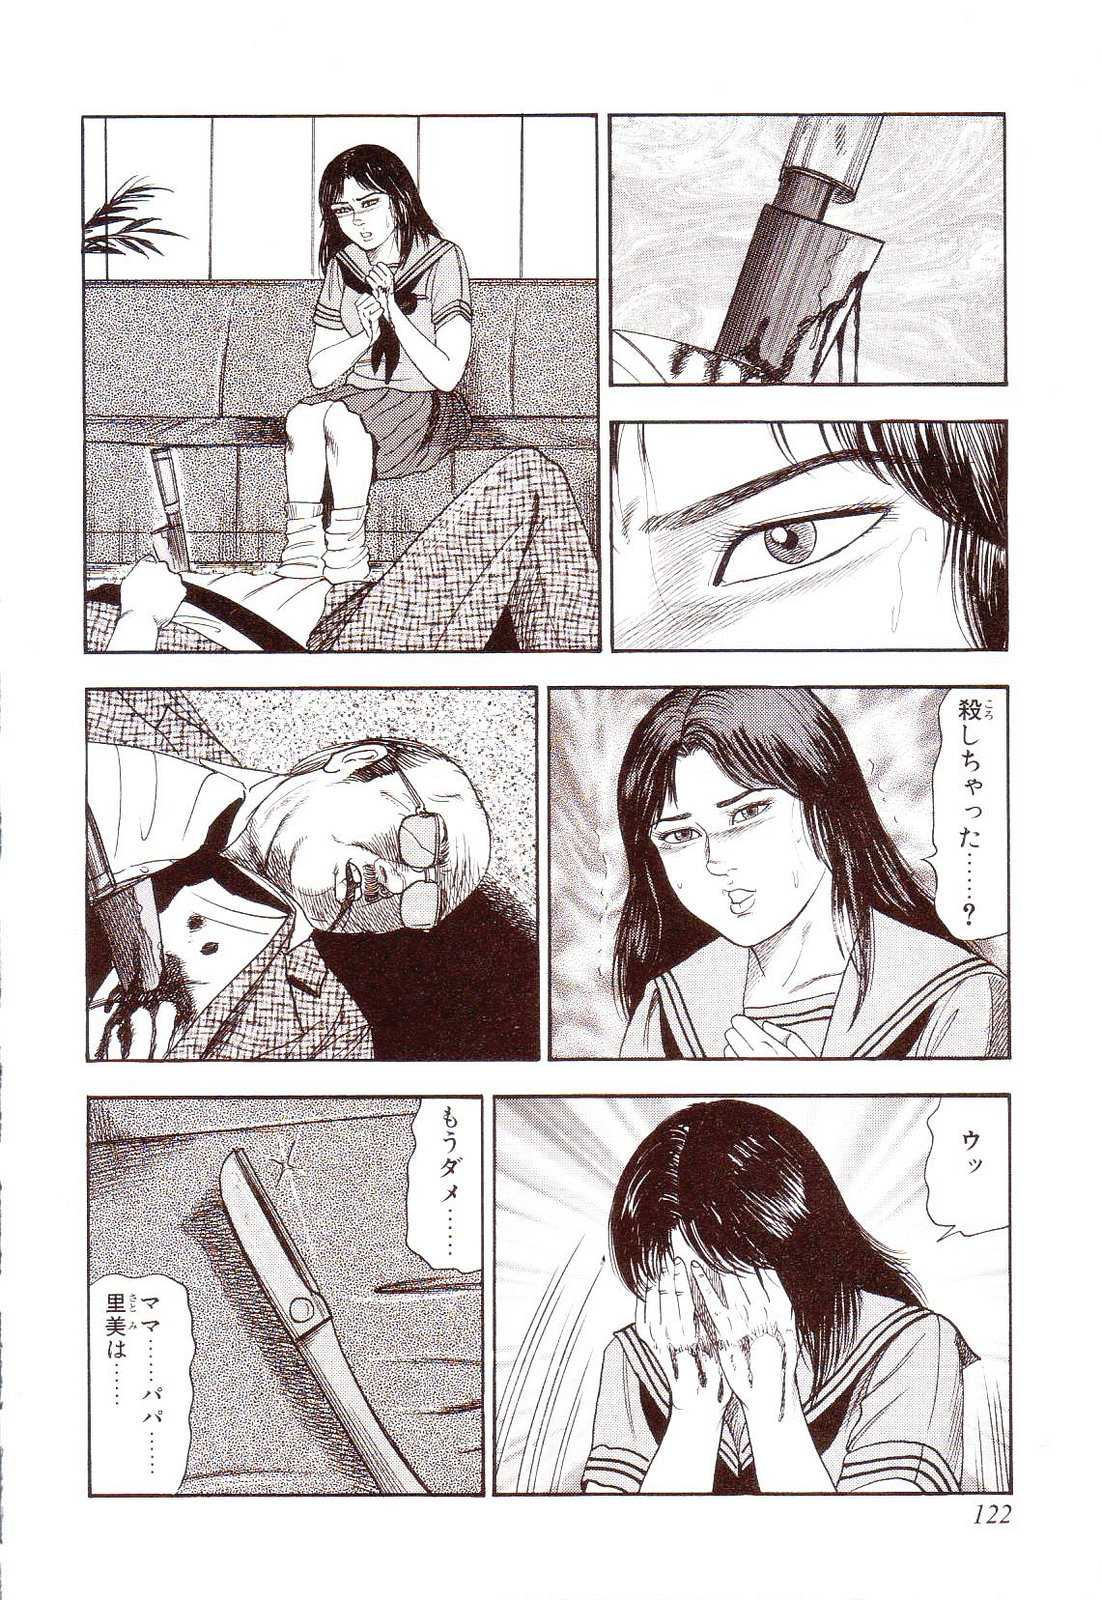 [Sanjou Tomomi] Inu ni Naritai -kyoufu manga shugyoku sakuhinshiyuu- [三条友美]  花嫁奴隷